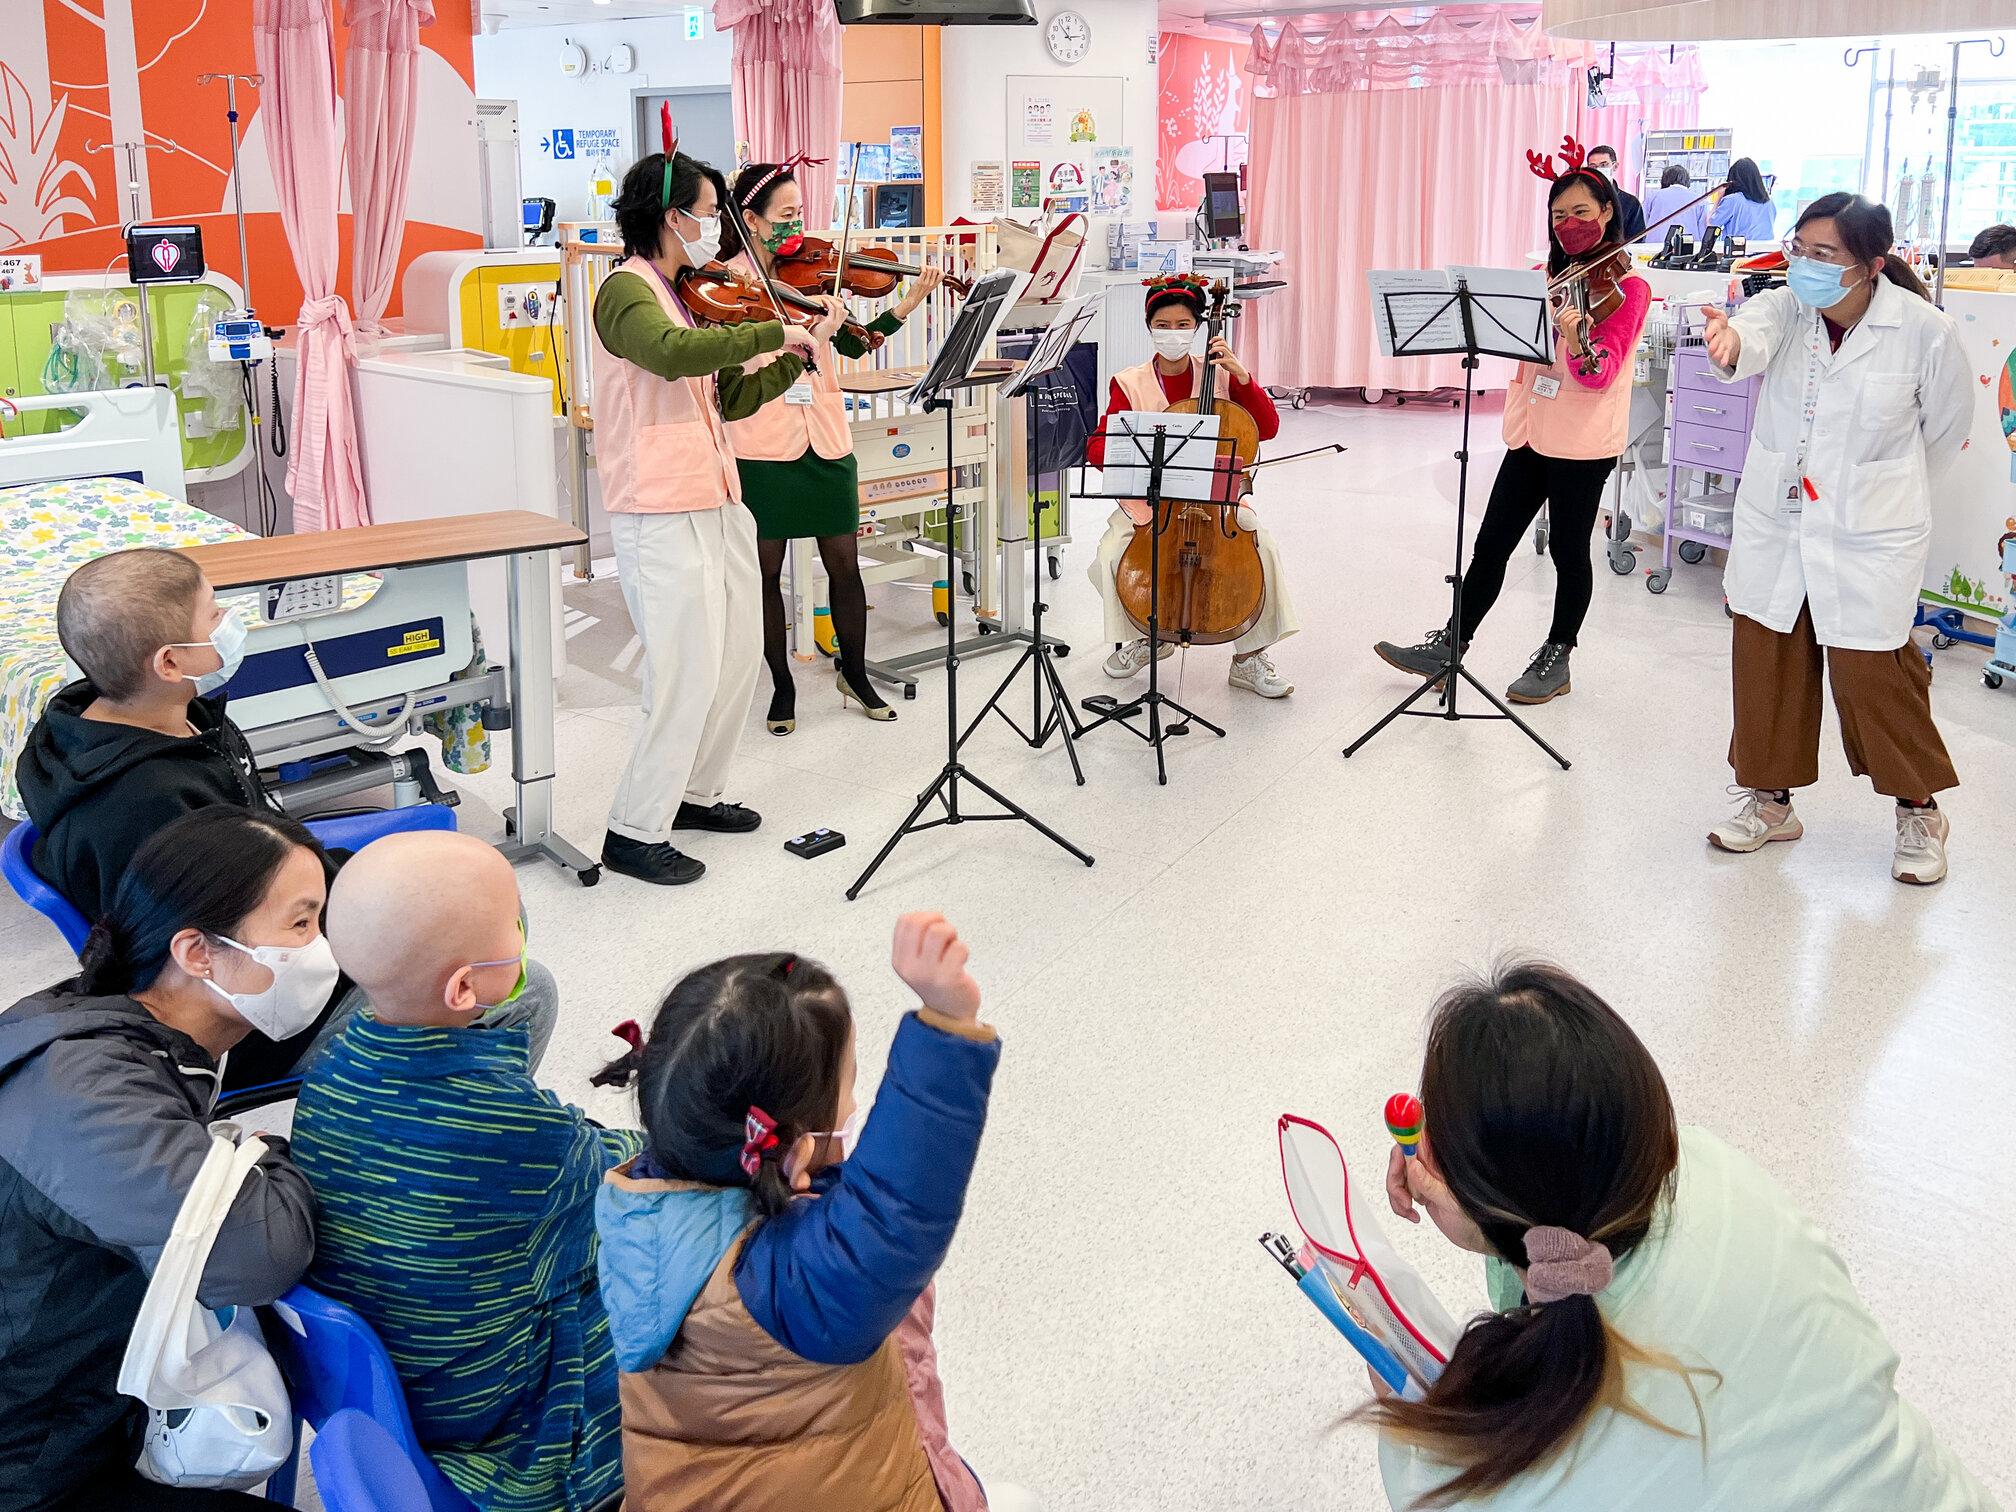 香港儿童医院特意安排几位专业乐手义工到病房演奏，让病童在悠扬乐韵中感受节日气氛。小朋友和家长听到熟悉的圣诞歌都很高兴。